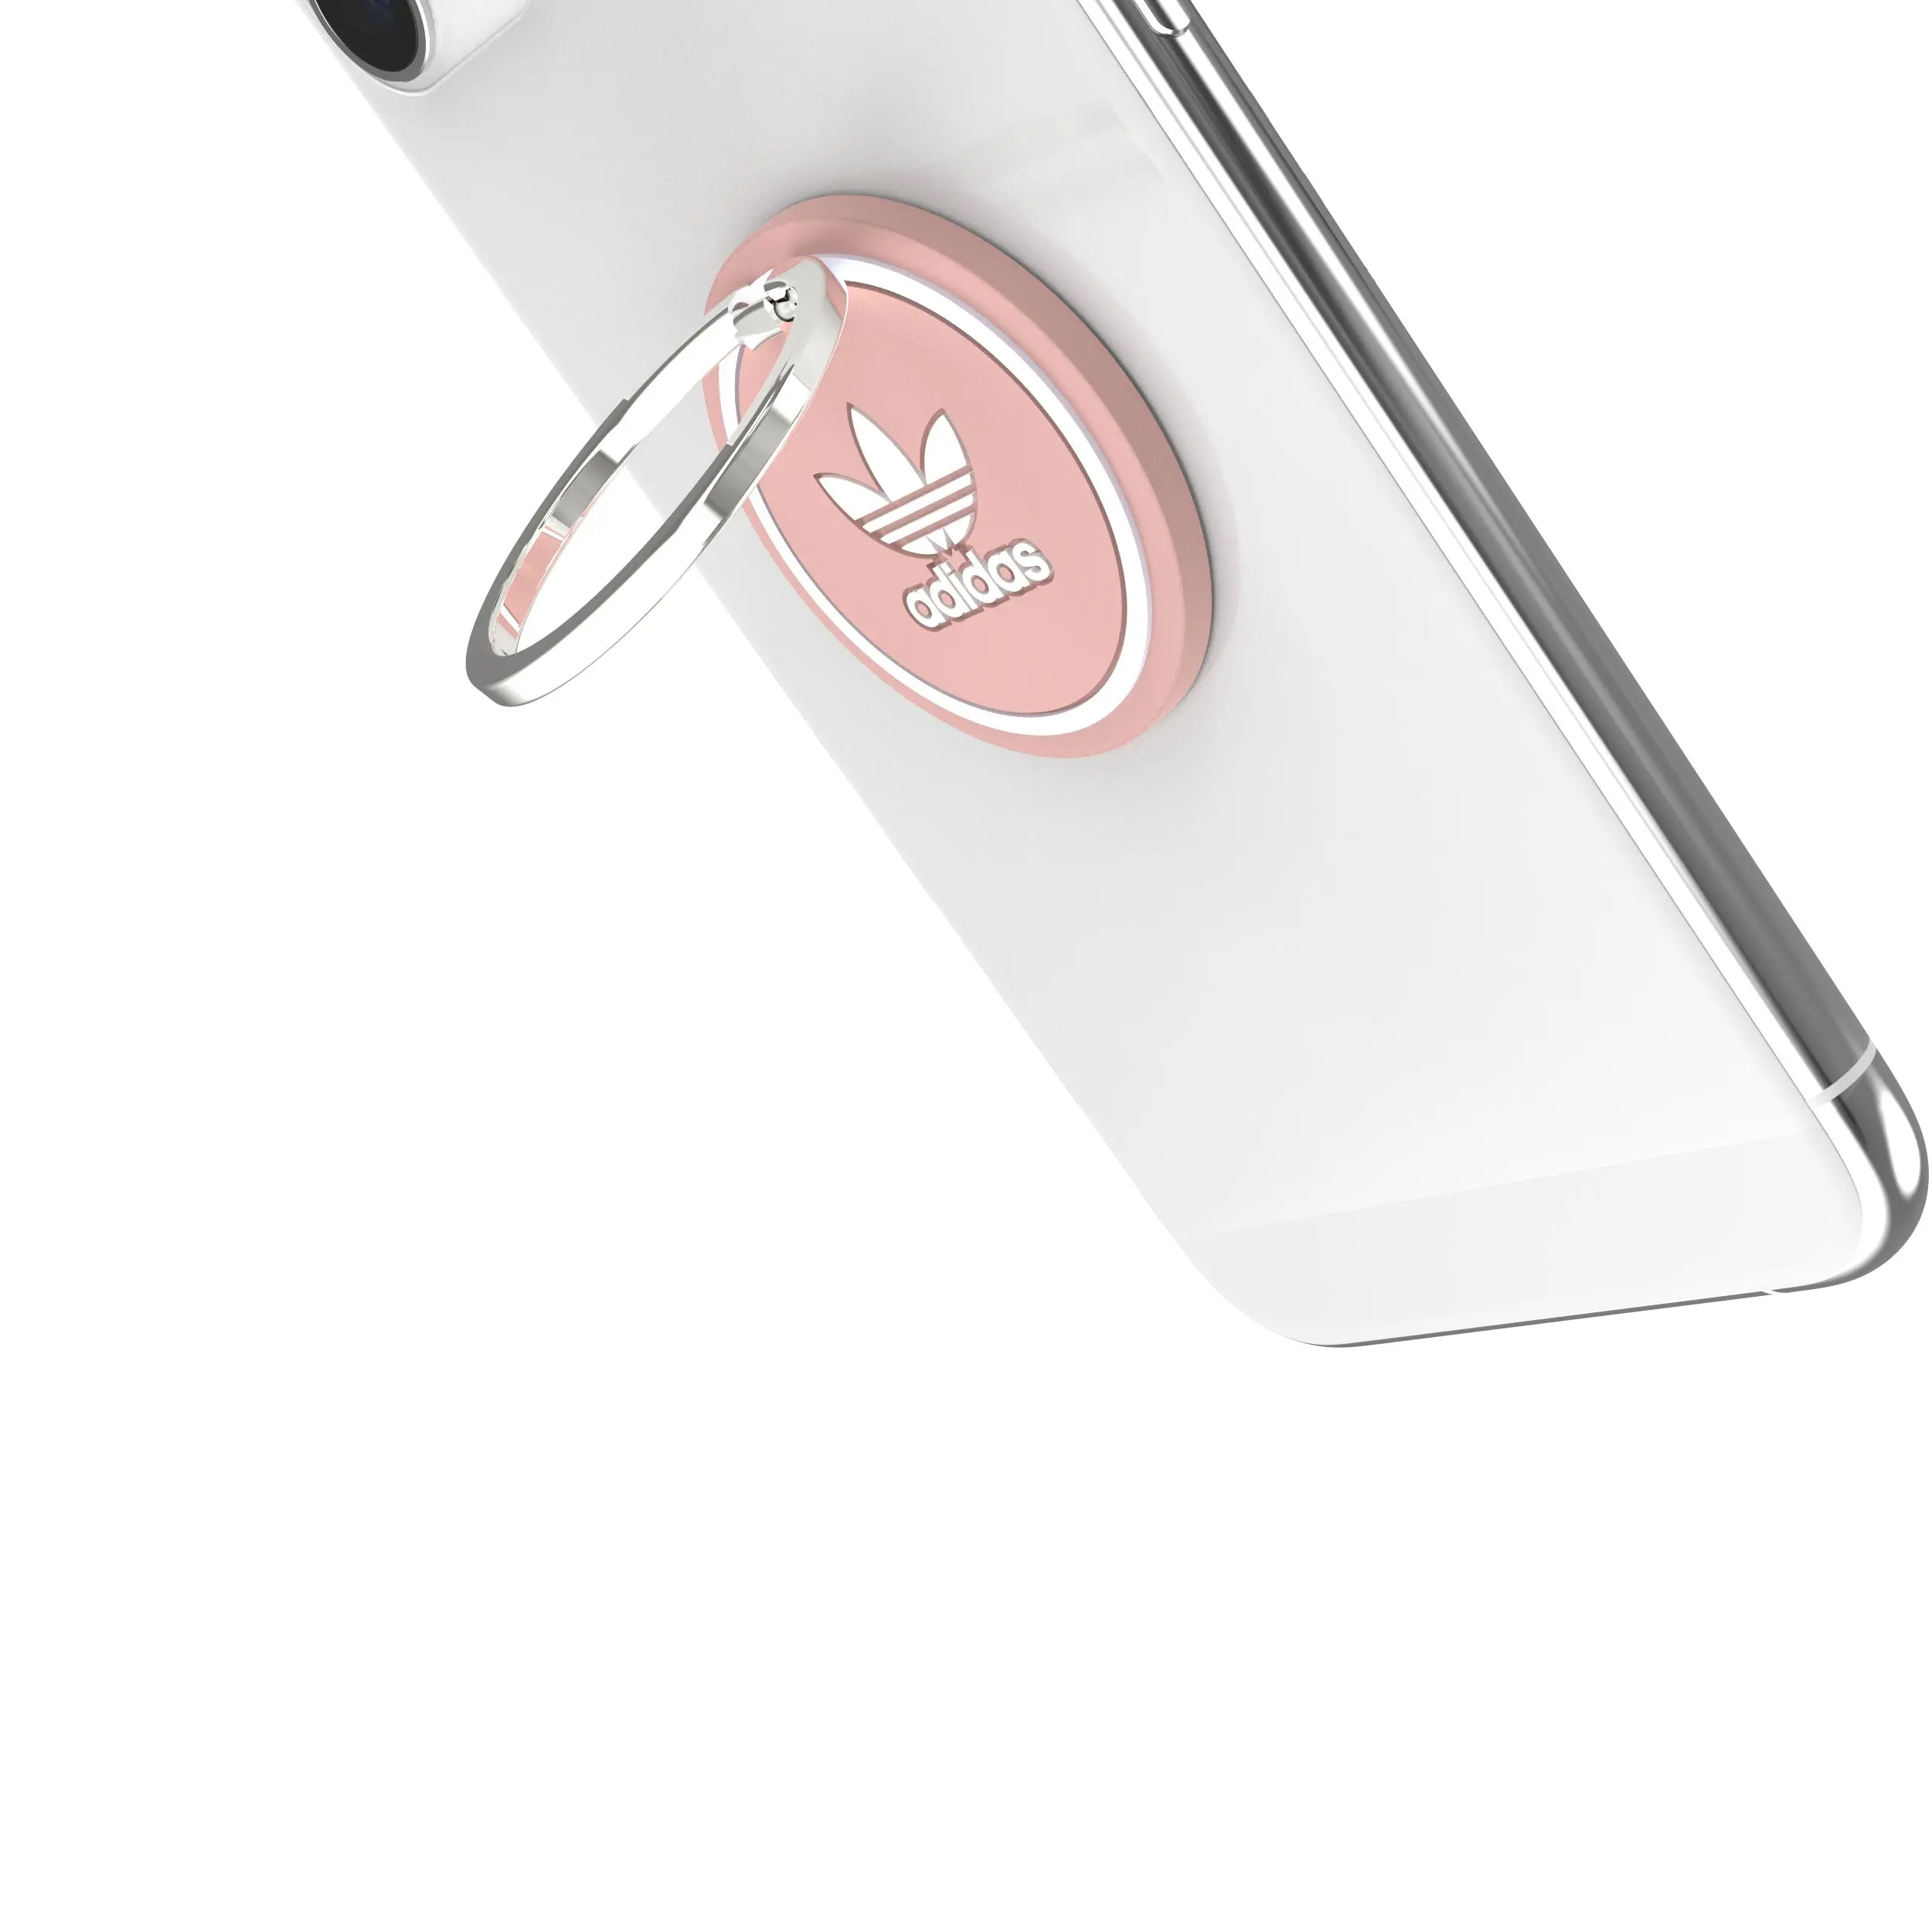 แหวนติดหลังมือถือ Adidas รุ่น Universal Phone Ring - สี Wonder Mauve/White